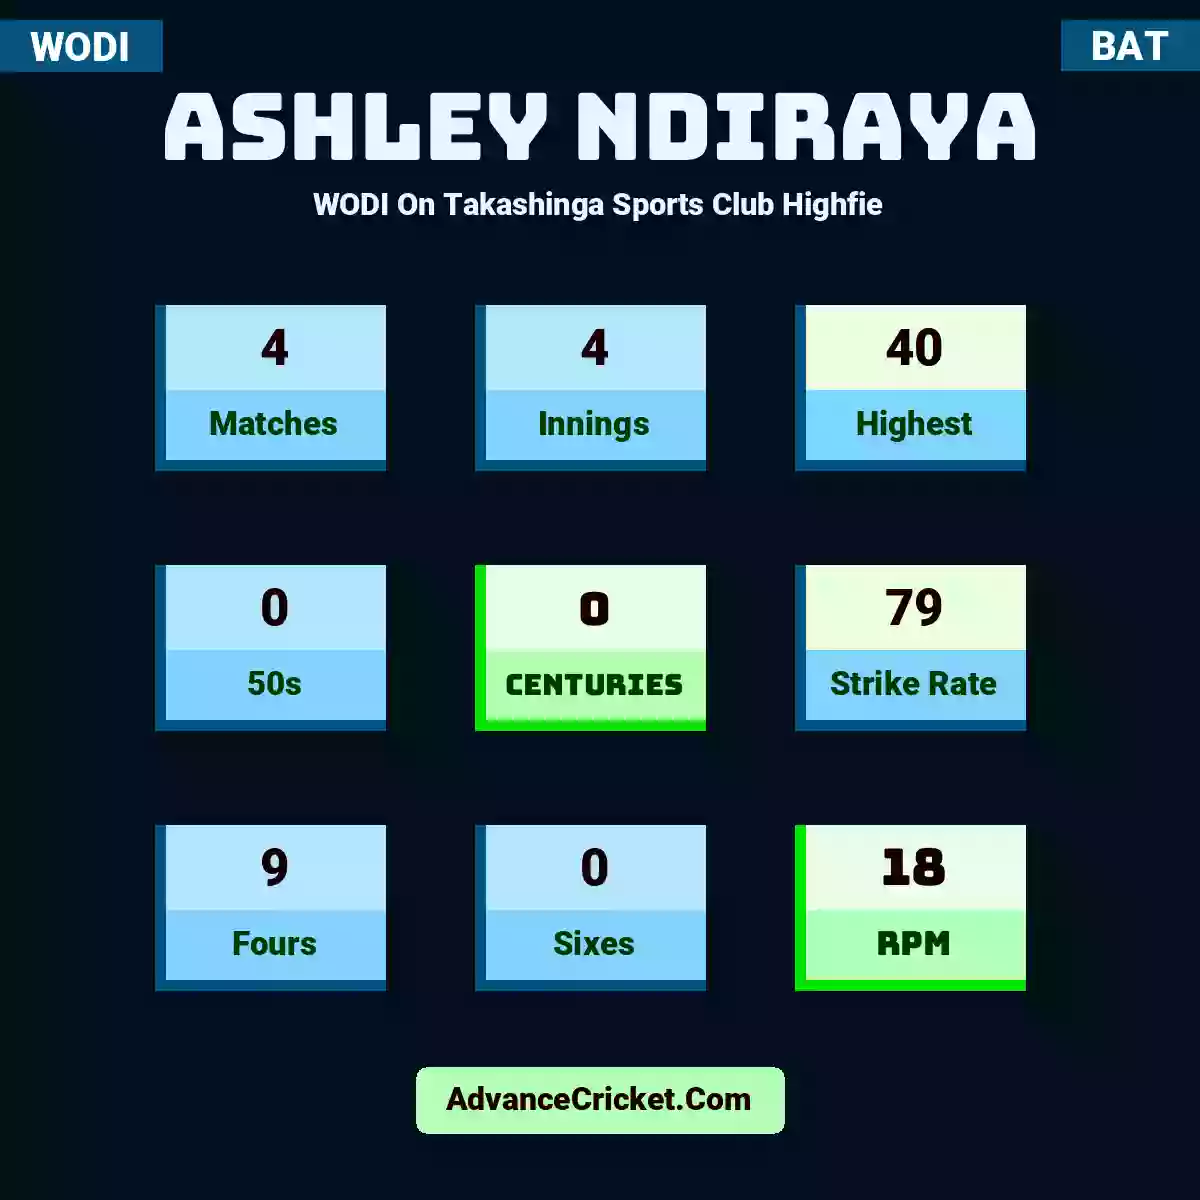 Ashley Ndiraya WODI  On Takashinga Sports Club Highfie, Ashley Ndiraya played 4 matches, scored 40 runs as highest, 0 half-centuries, and 0 centuries, with a strike rate of 79. A.Ndiraya hit 9 fours and 0 sixes, with an RPM of 18.